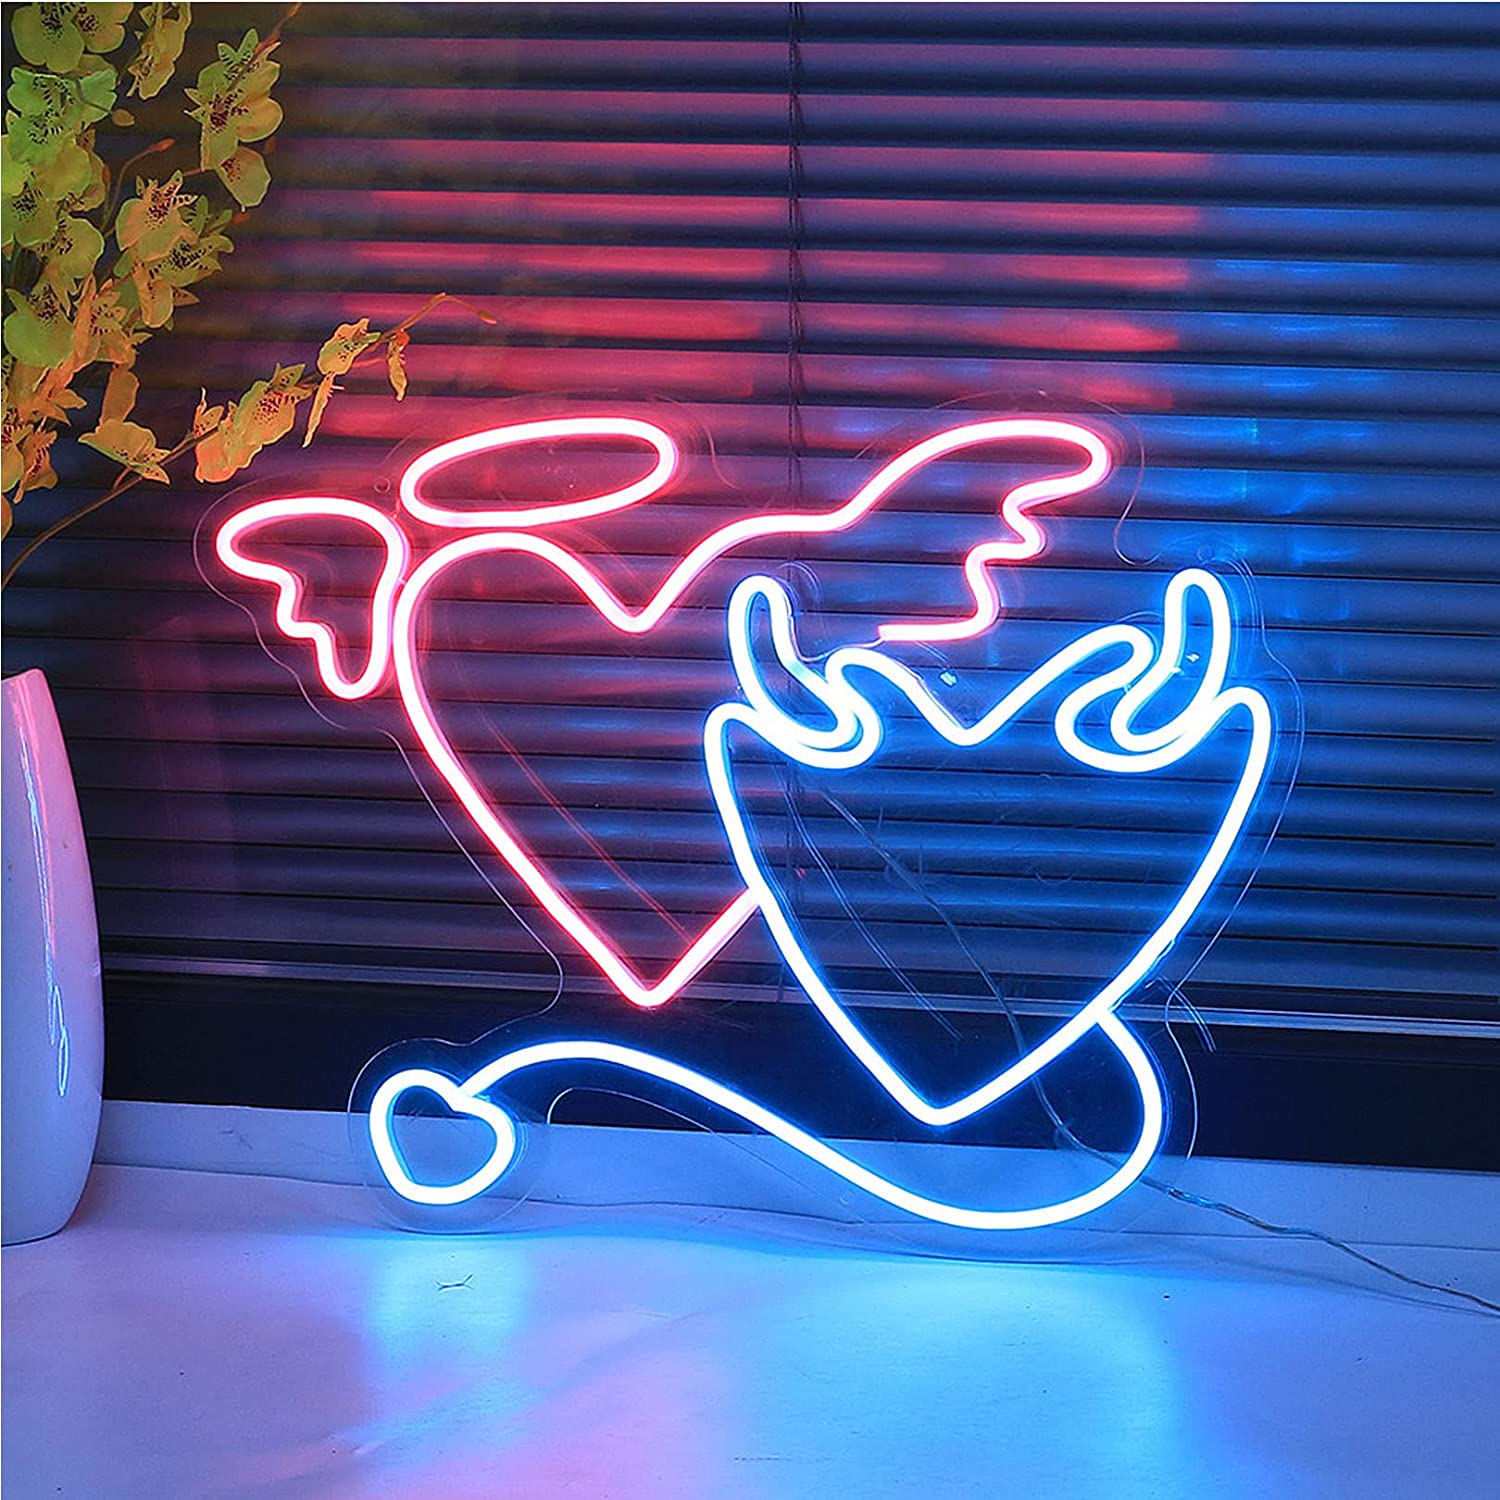 NEONIP-Insegna luminosa al neon a LED con cuori di angelo e diavolo fatta a mano al 100%.